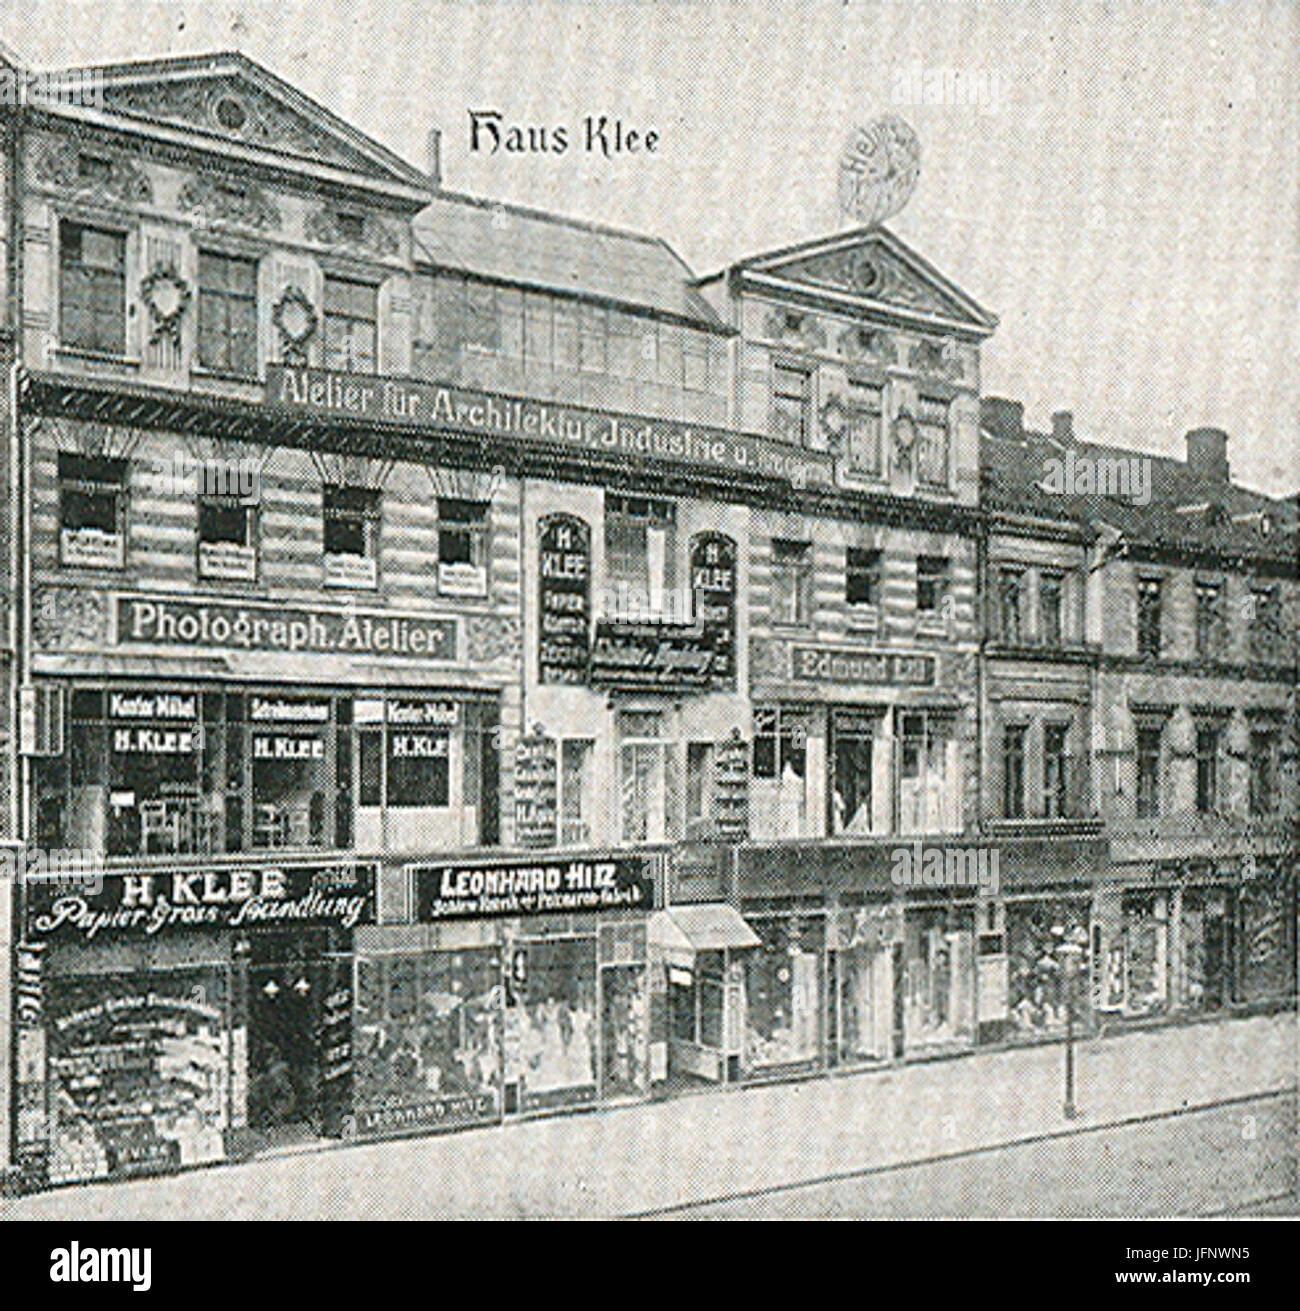 1910er Jahre ca. Haus Heinrich Klee Georgstraße 14 Hannover Edmund Lill Leonhard Hitz Stockfoto